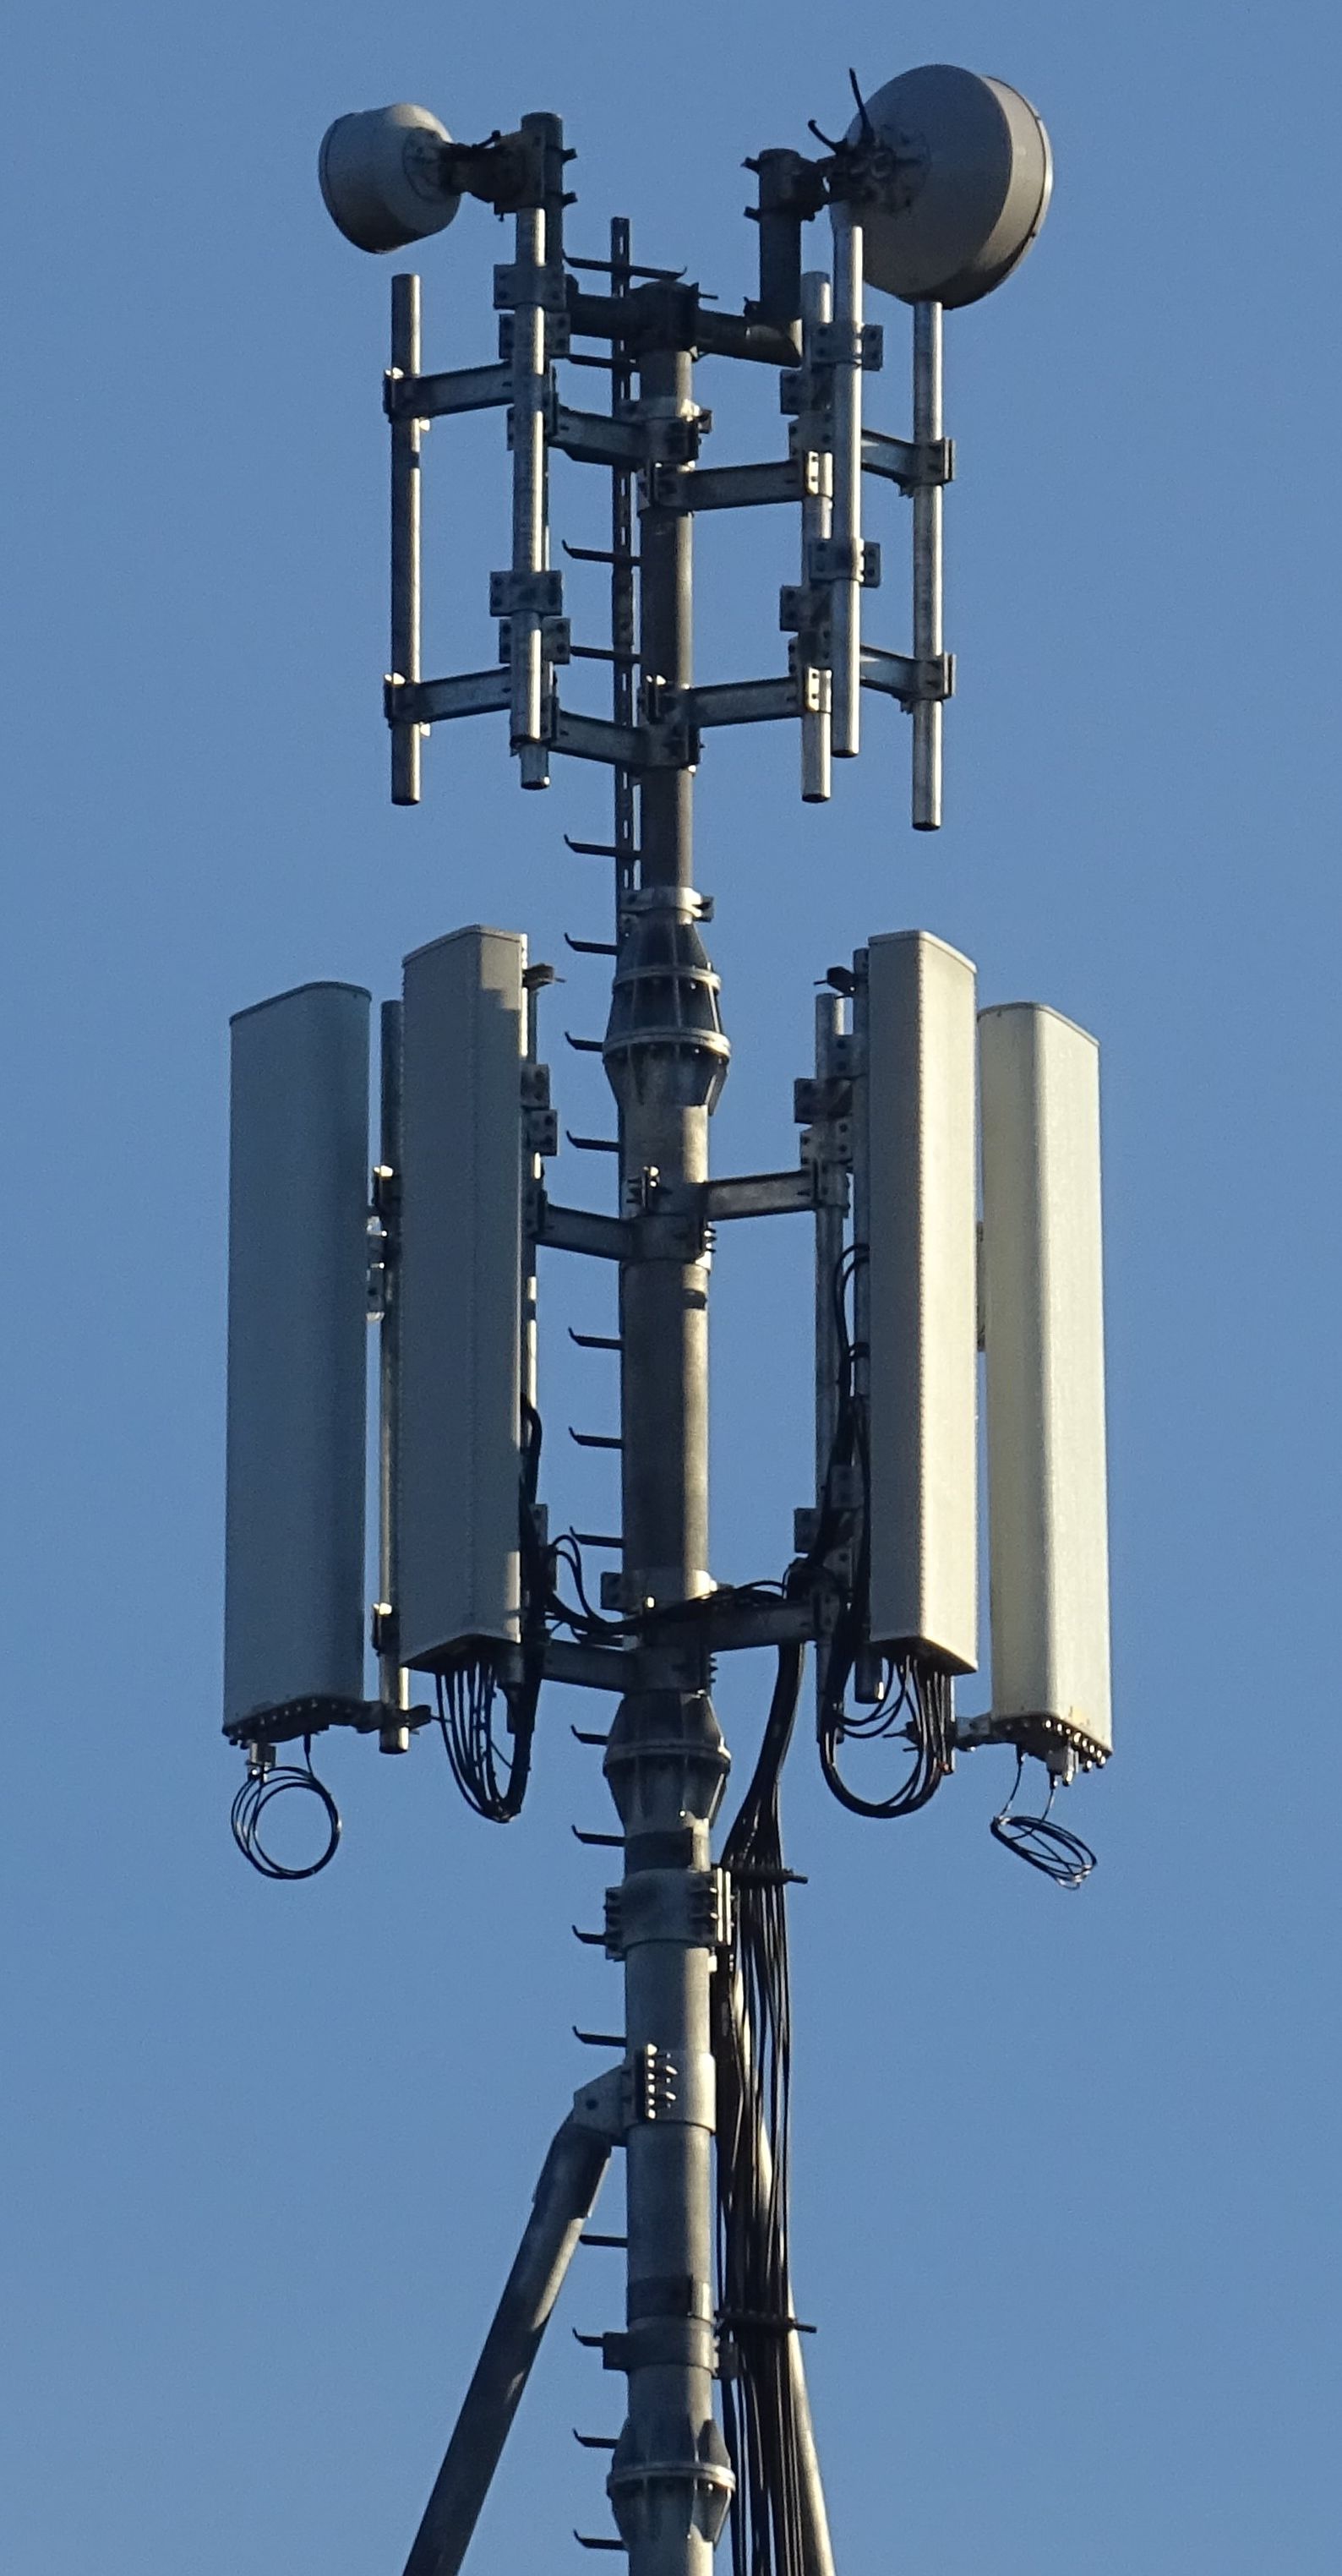 Die Antennen von Vodafone und Tim (noch nicht in Betrieb) im Dezember 2020. Foto Daniel Z.